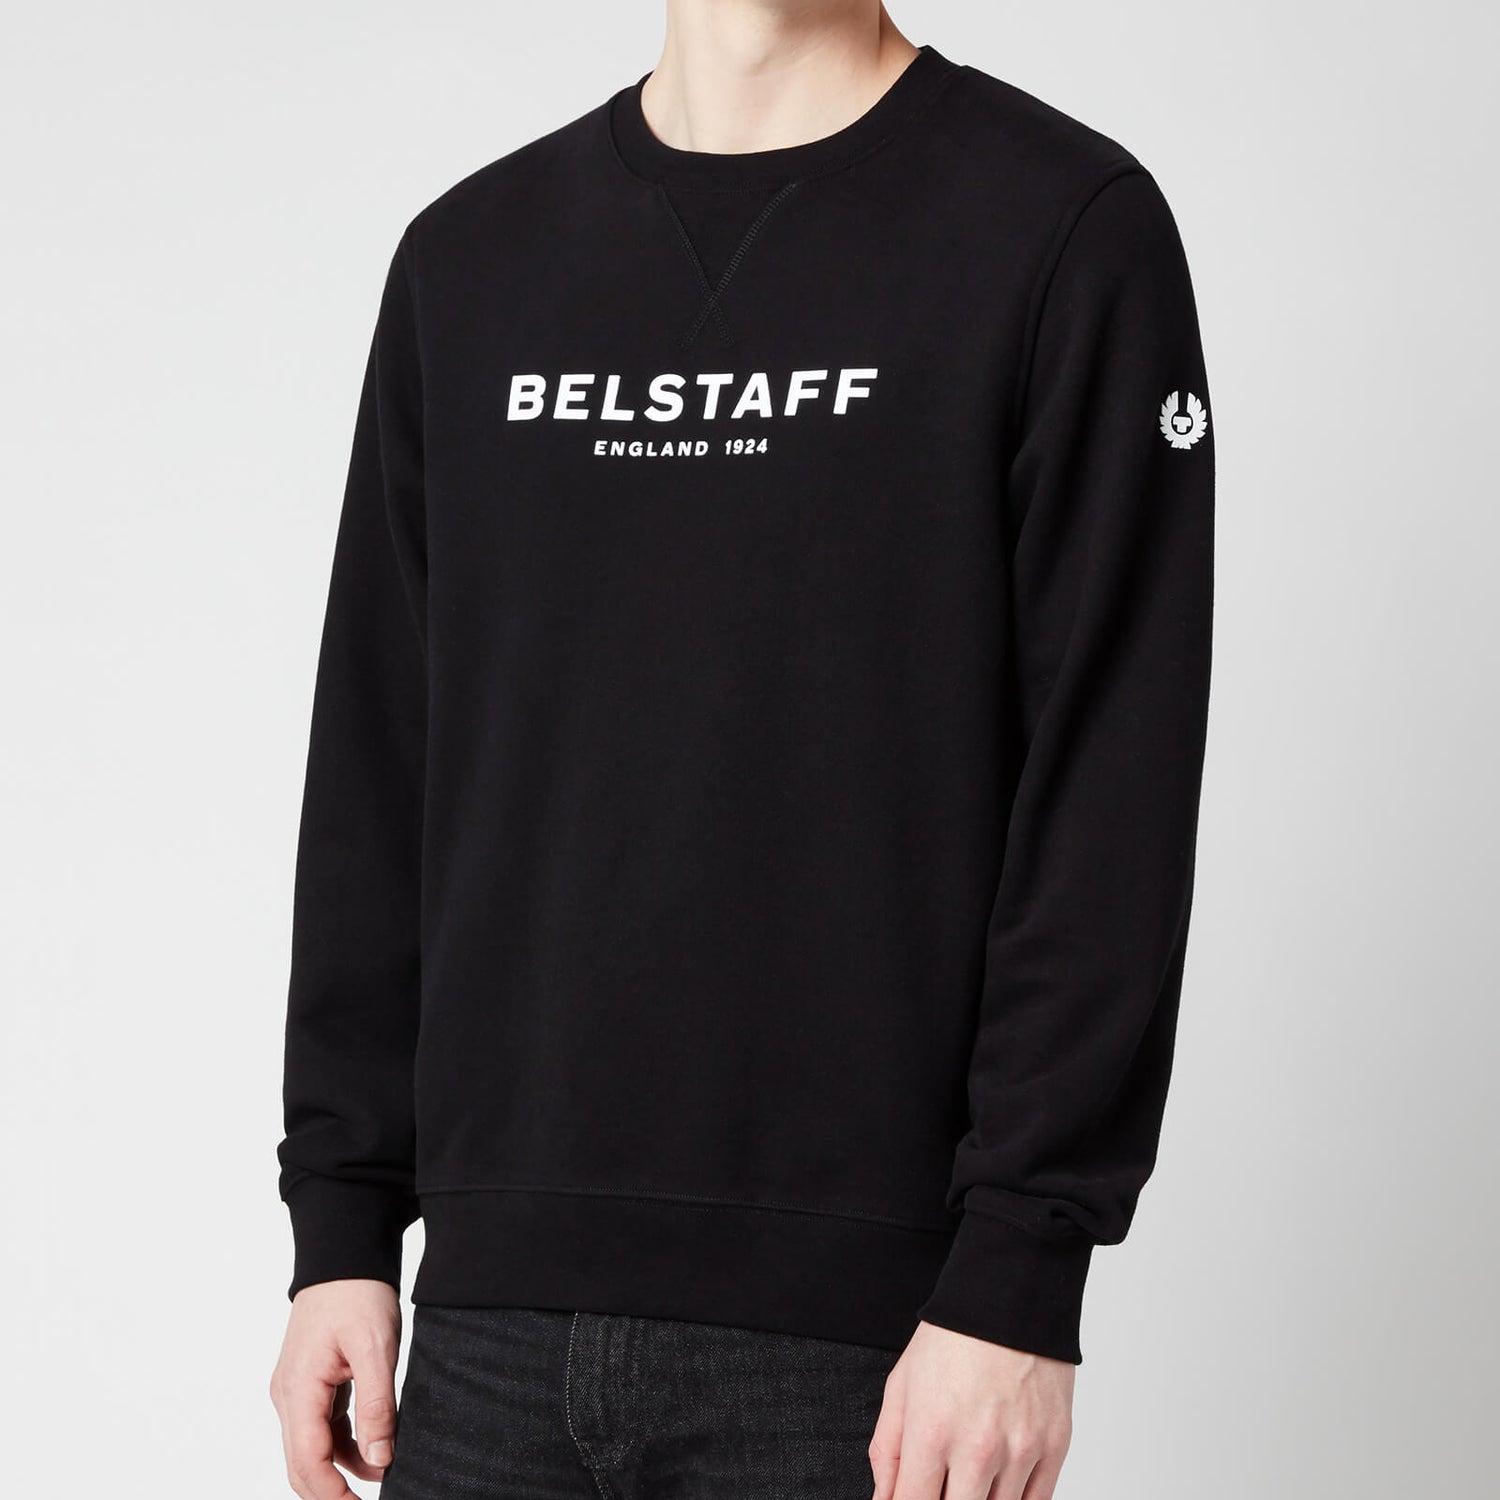 Belstaff Men's 1924 Sweatshirt - Black/White - S